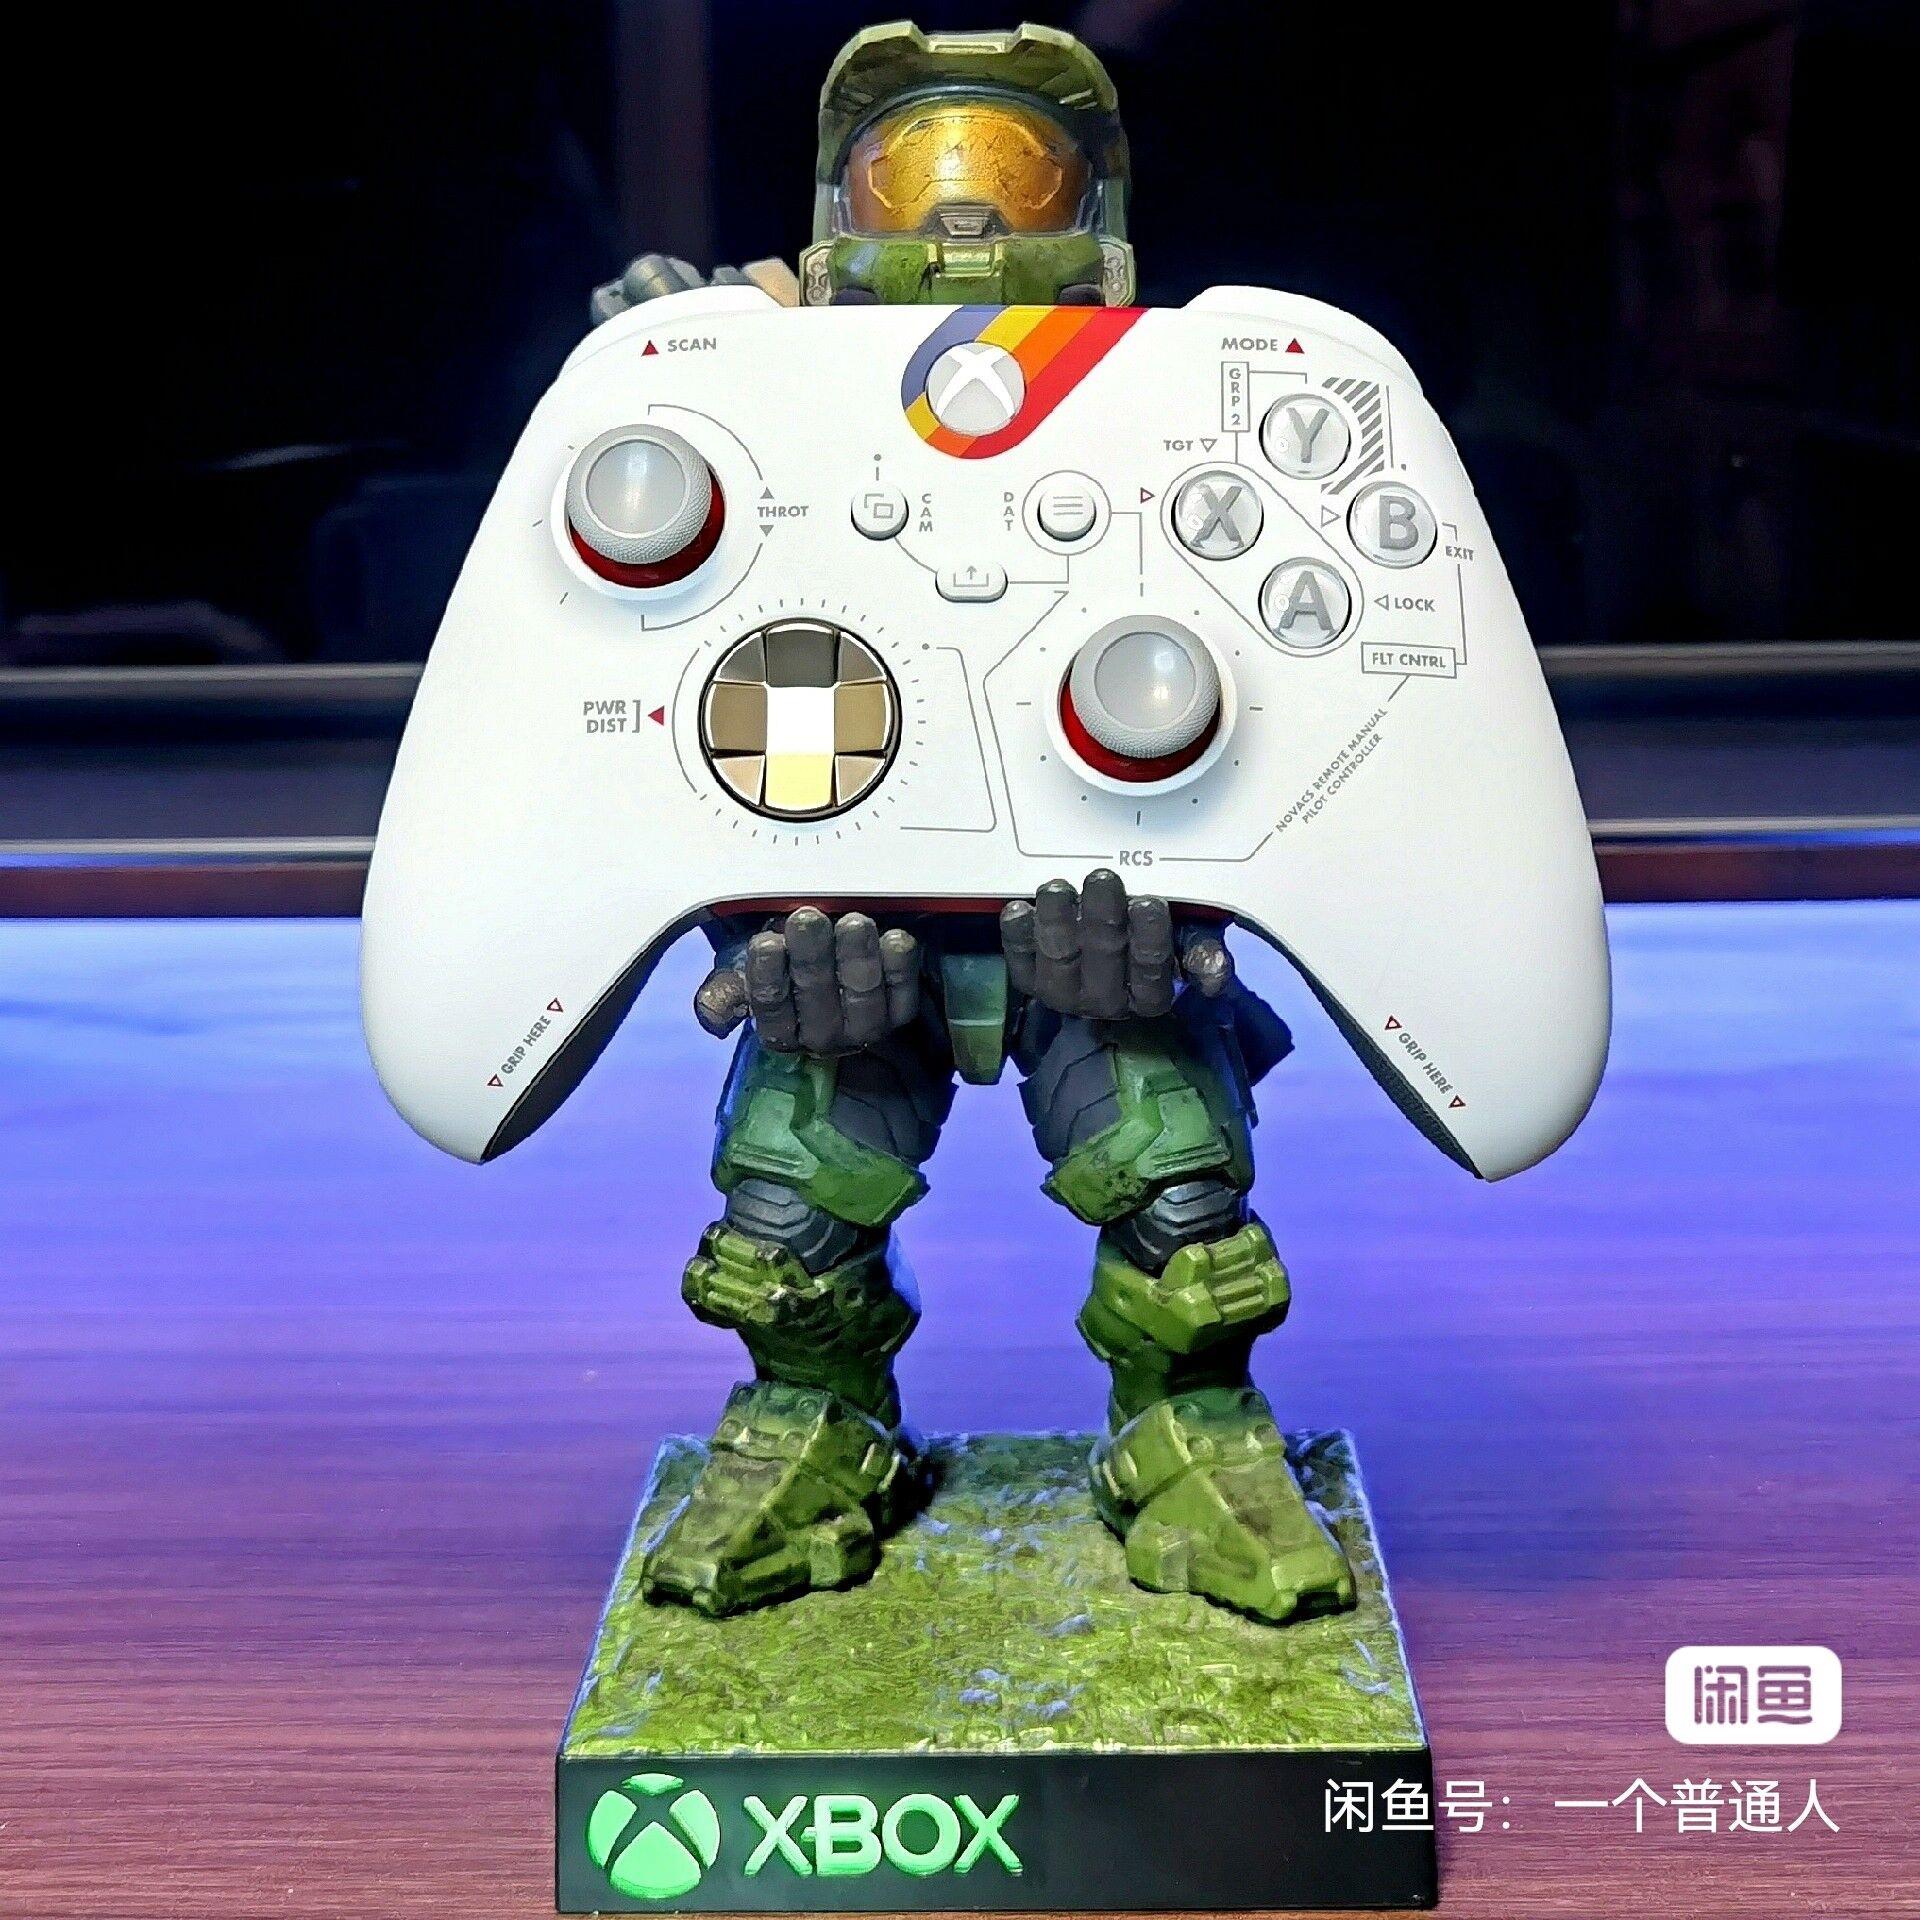 疑似星空限定Xbox手柄泄露 有透明扳机键_0